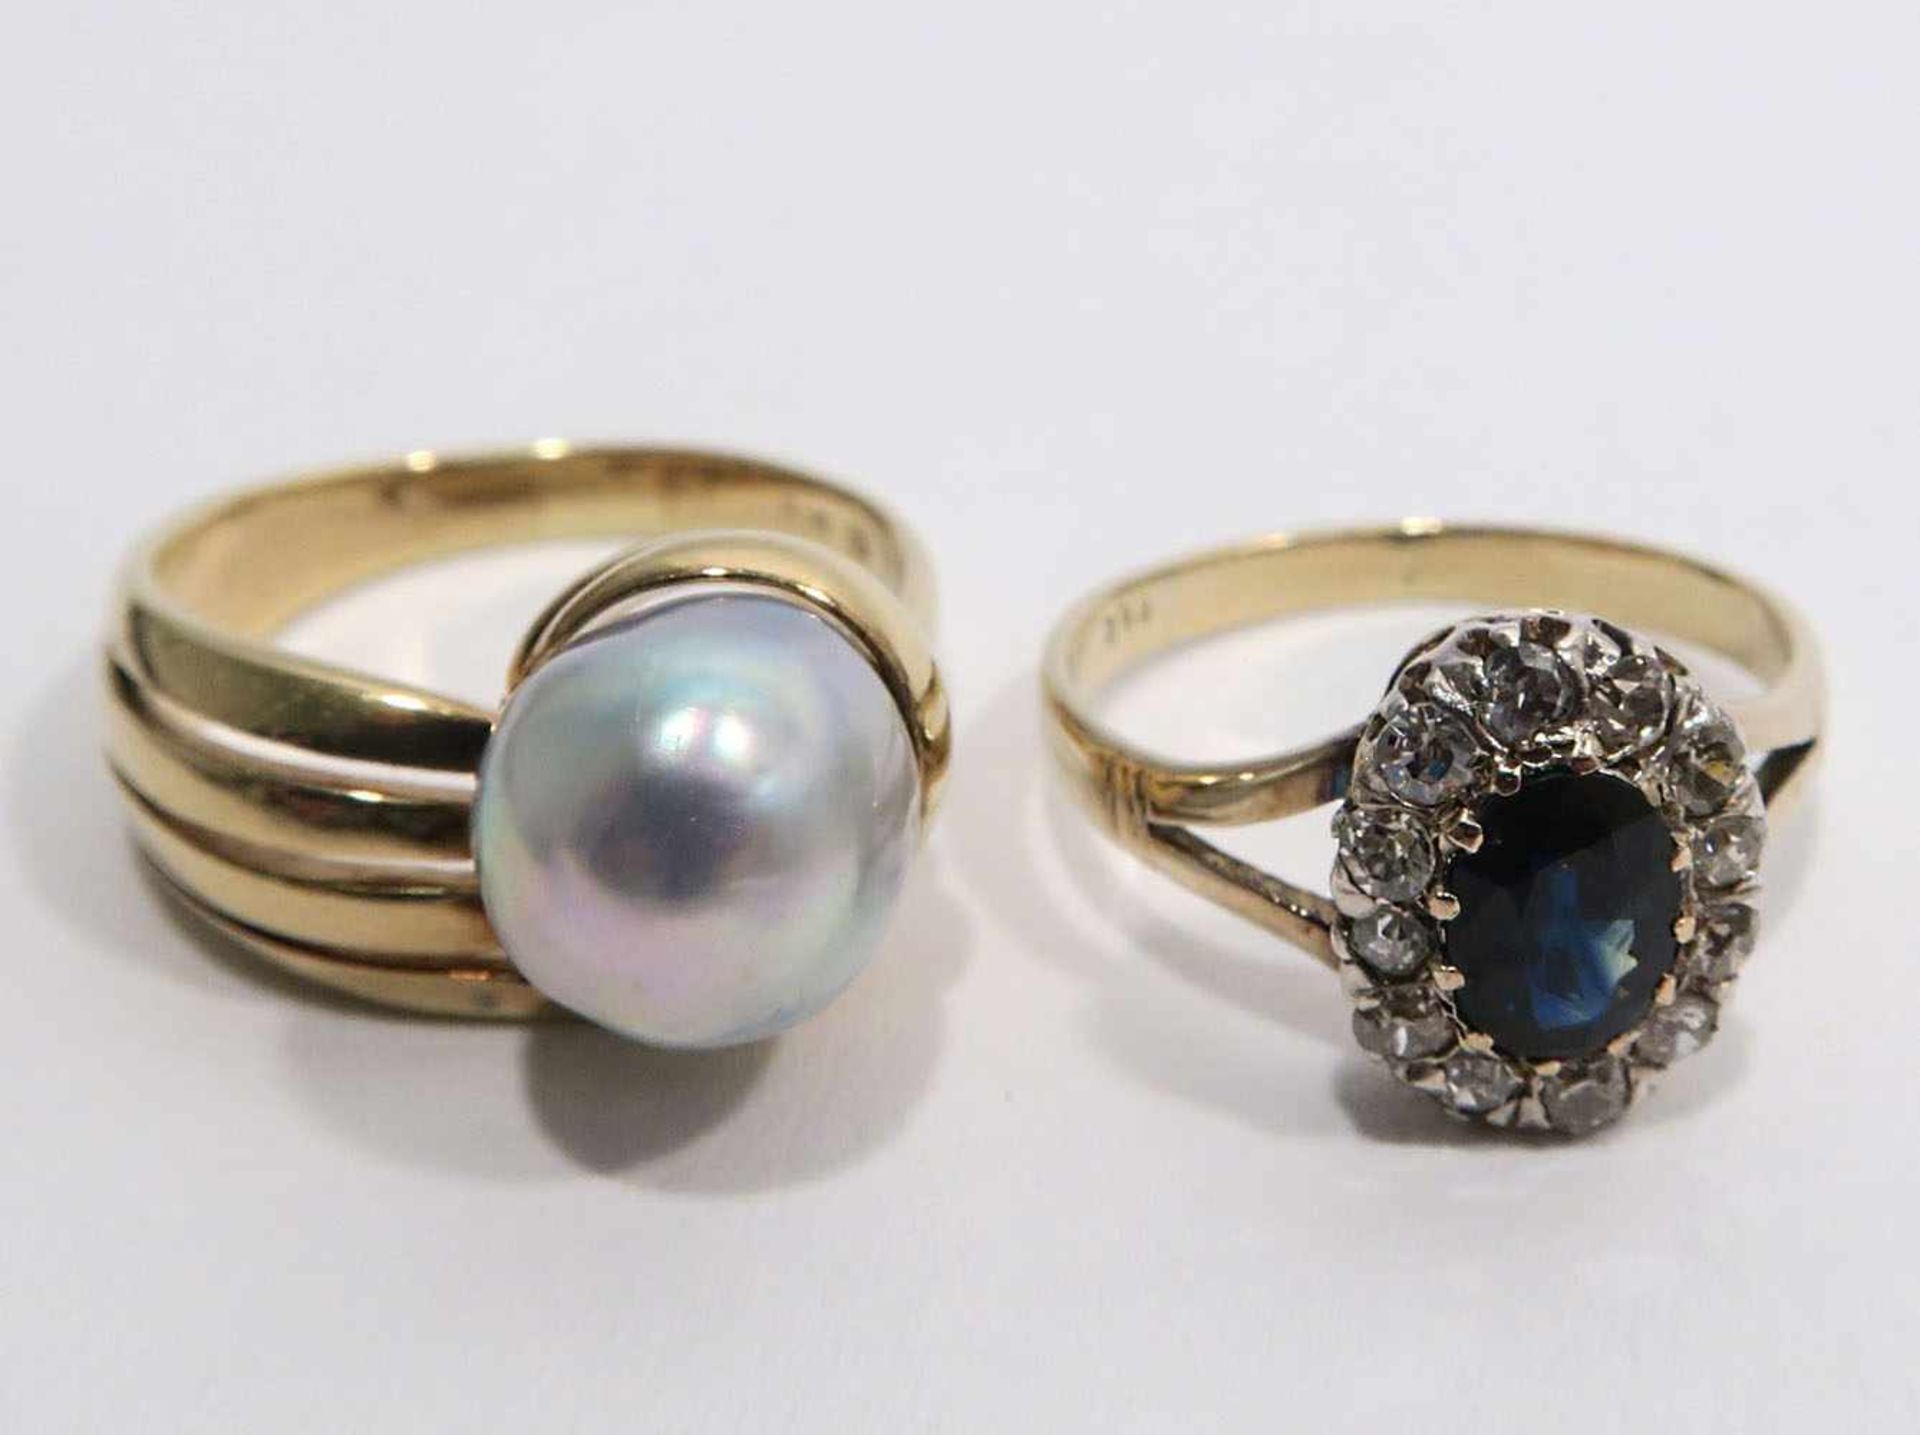 Zwei Ringe14 K GG, Marken (585). Mit einem Saphir, umgeben von Diamantrosen bzw. einer Perle